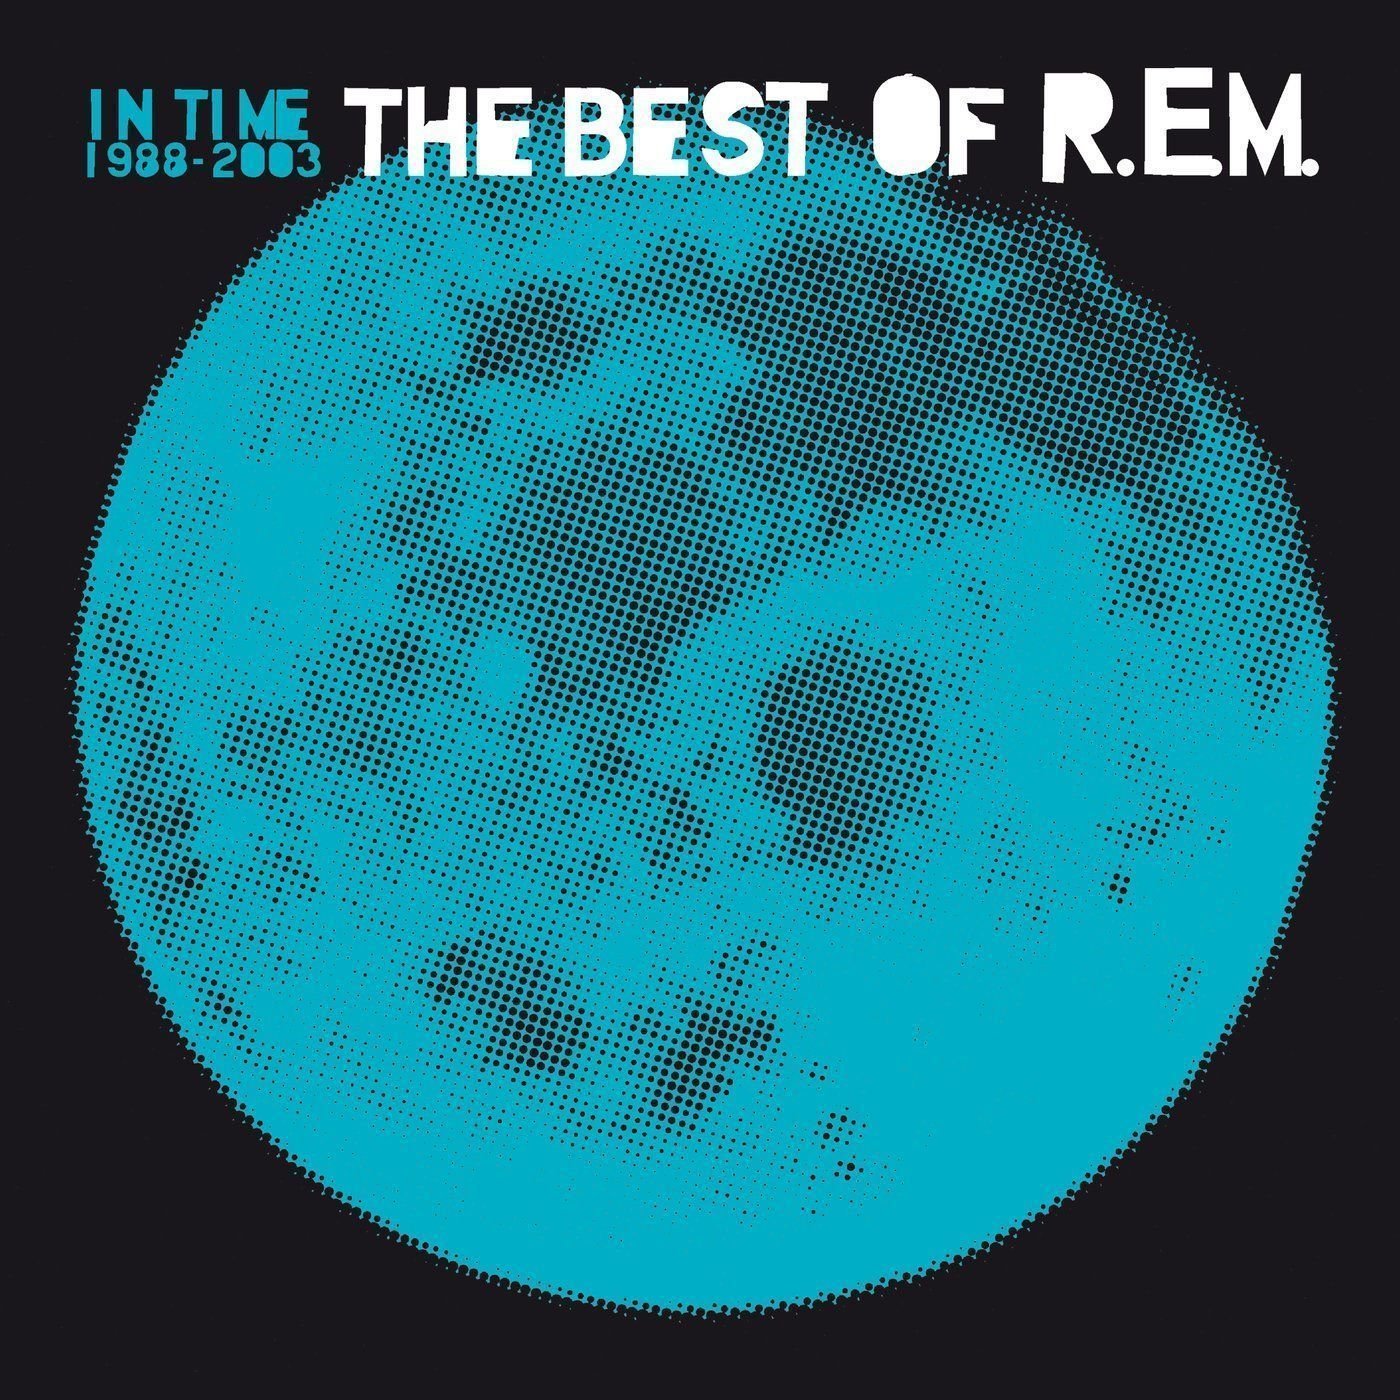 LP deska R.E.M. - In Time: The Best Of R.E.M. 1988-2003 (2 LP)